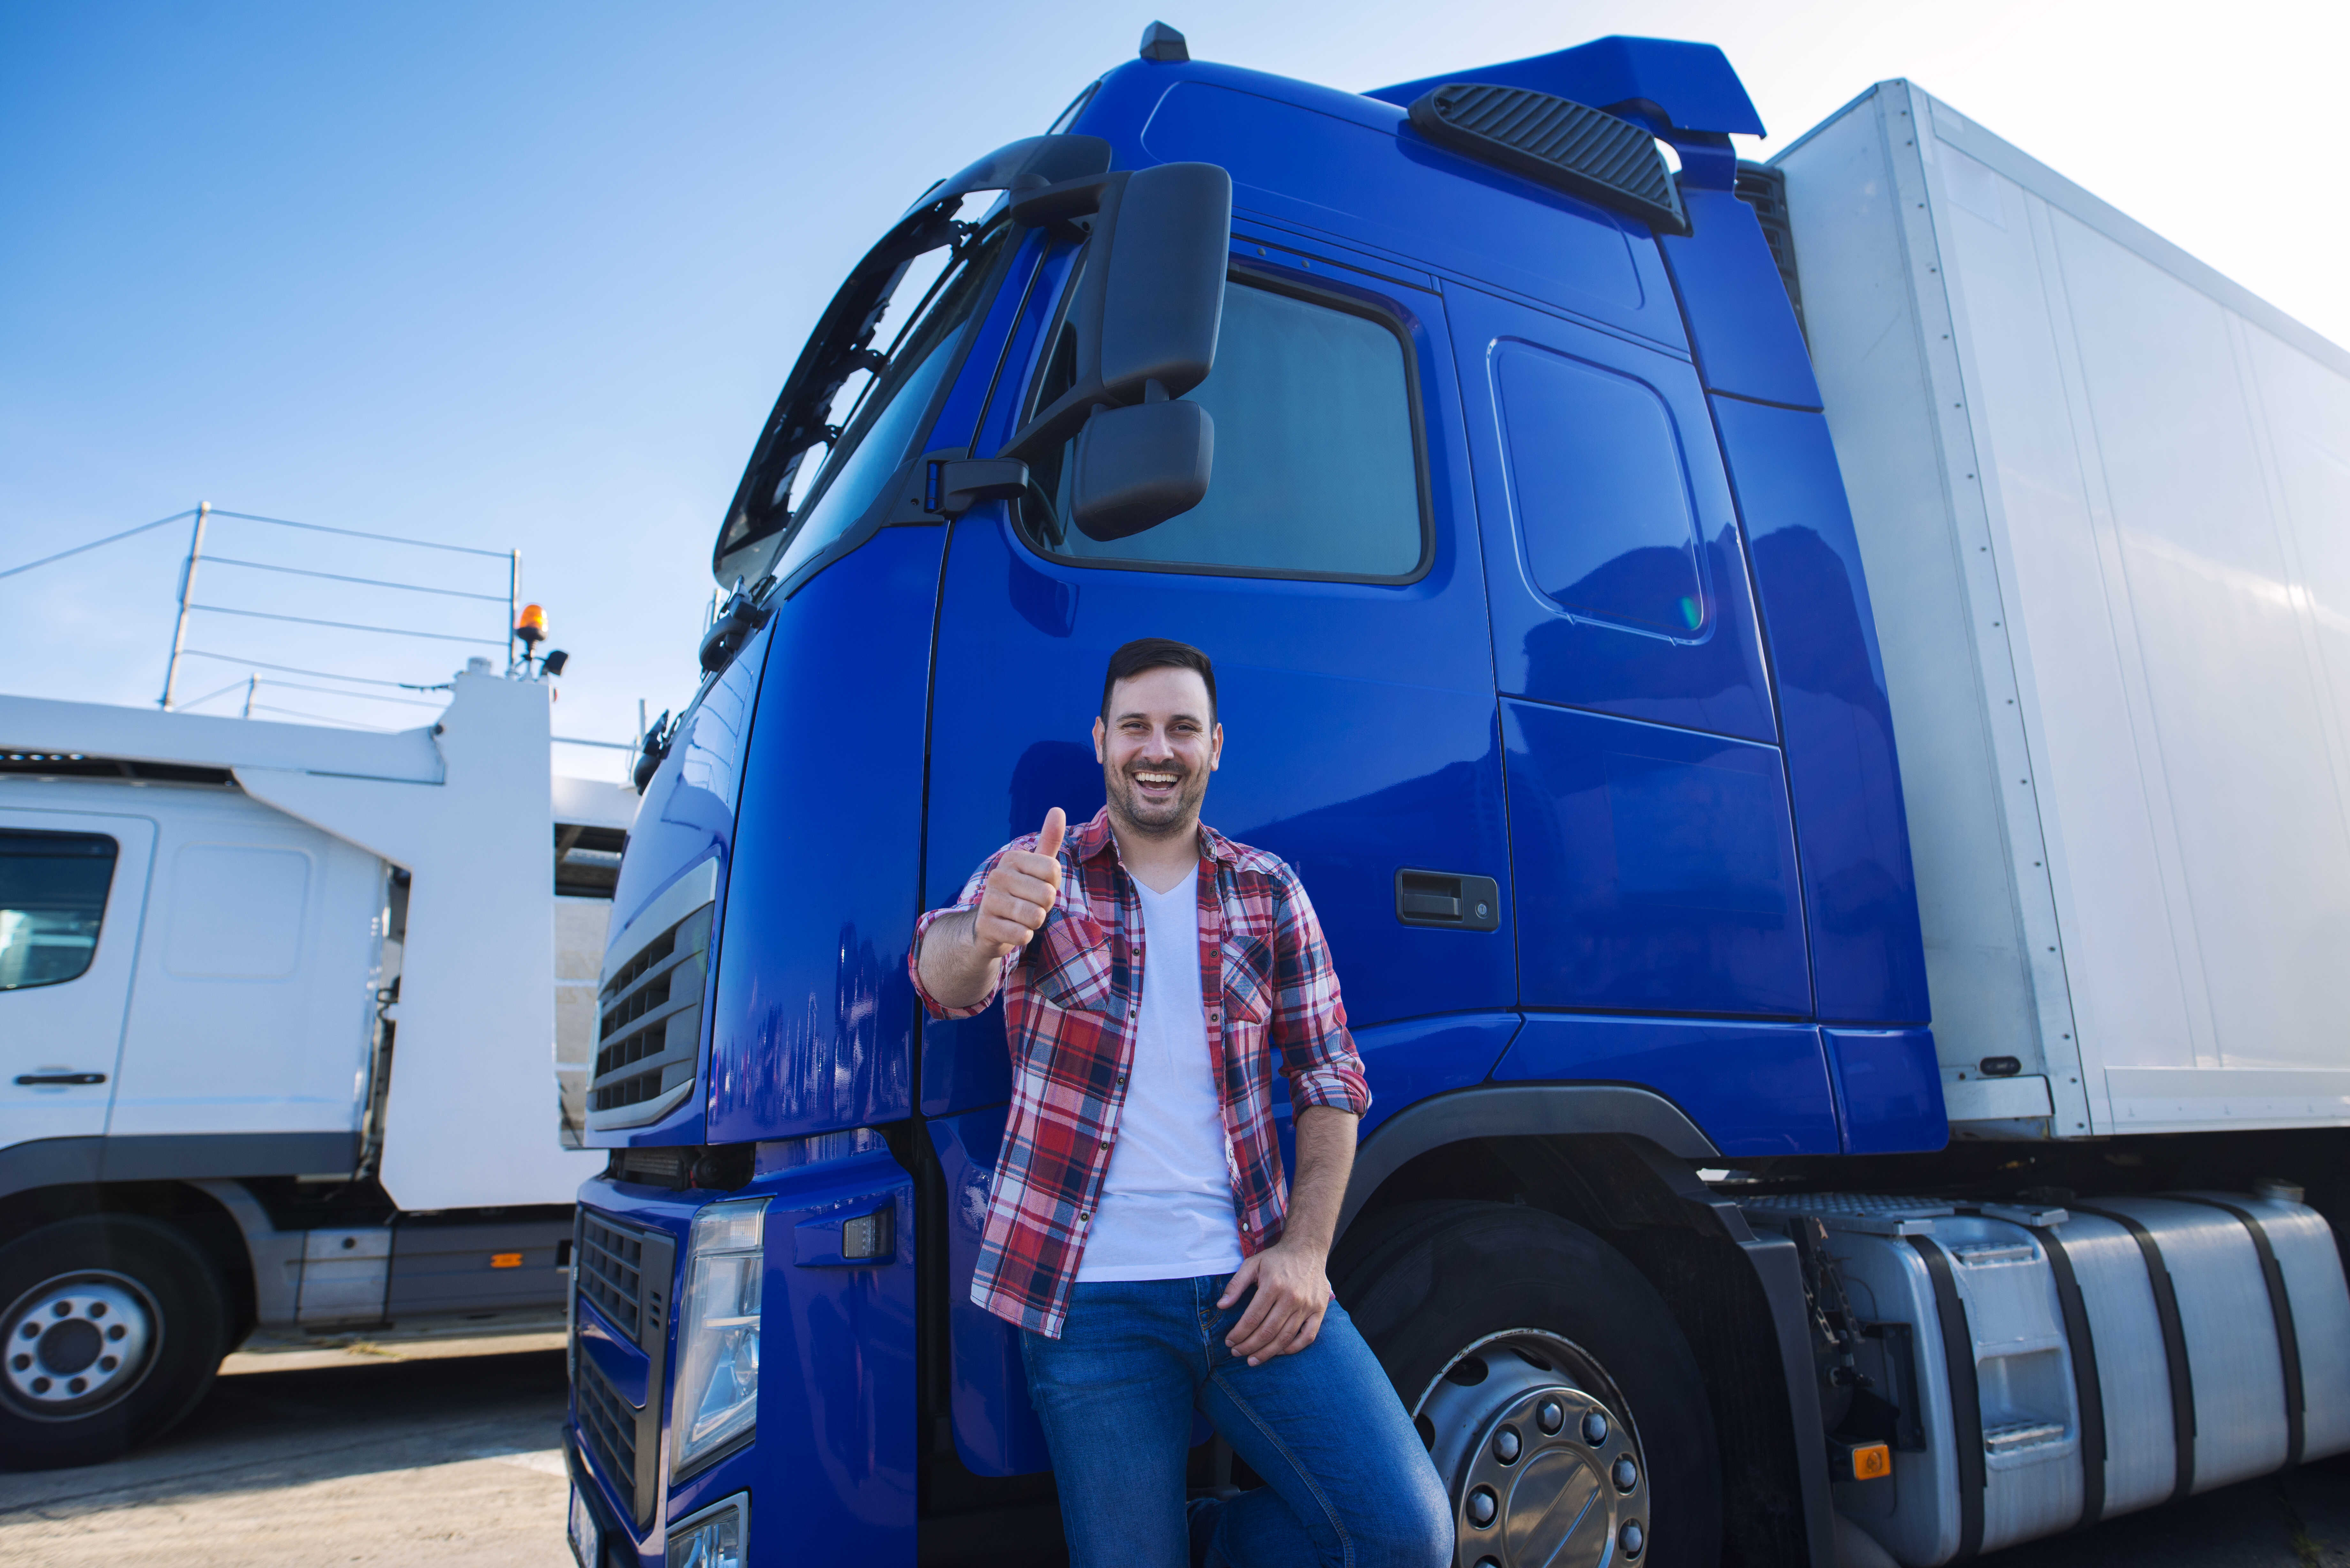 Mobile tire service for trucks also in Austria